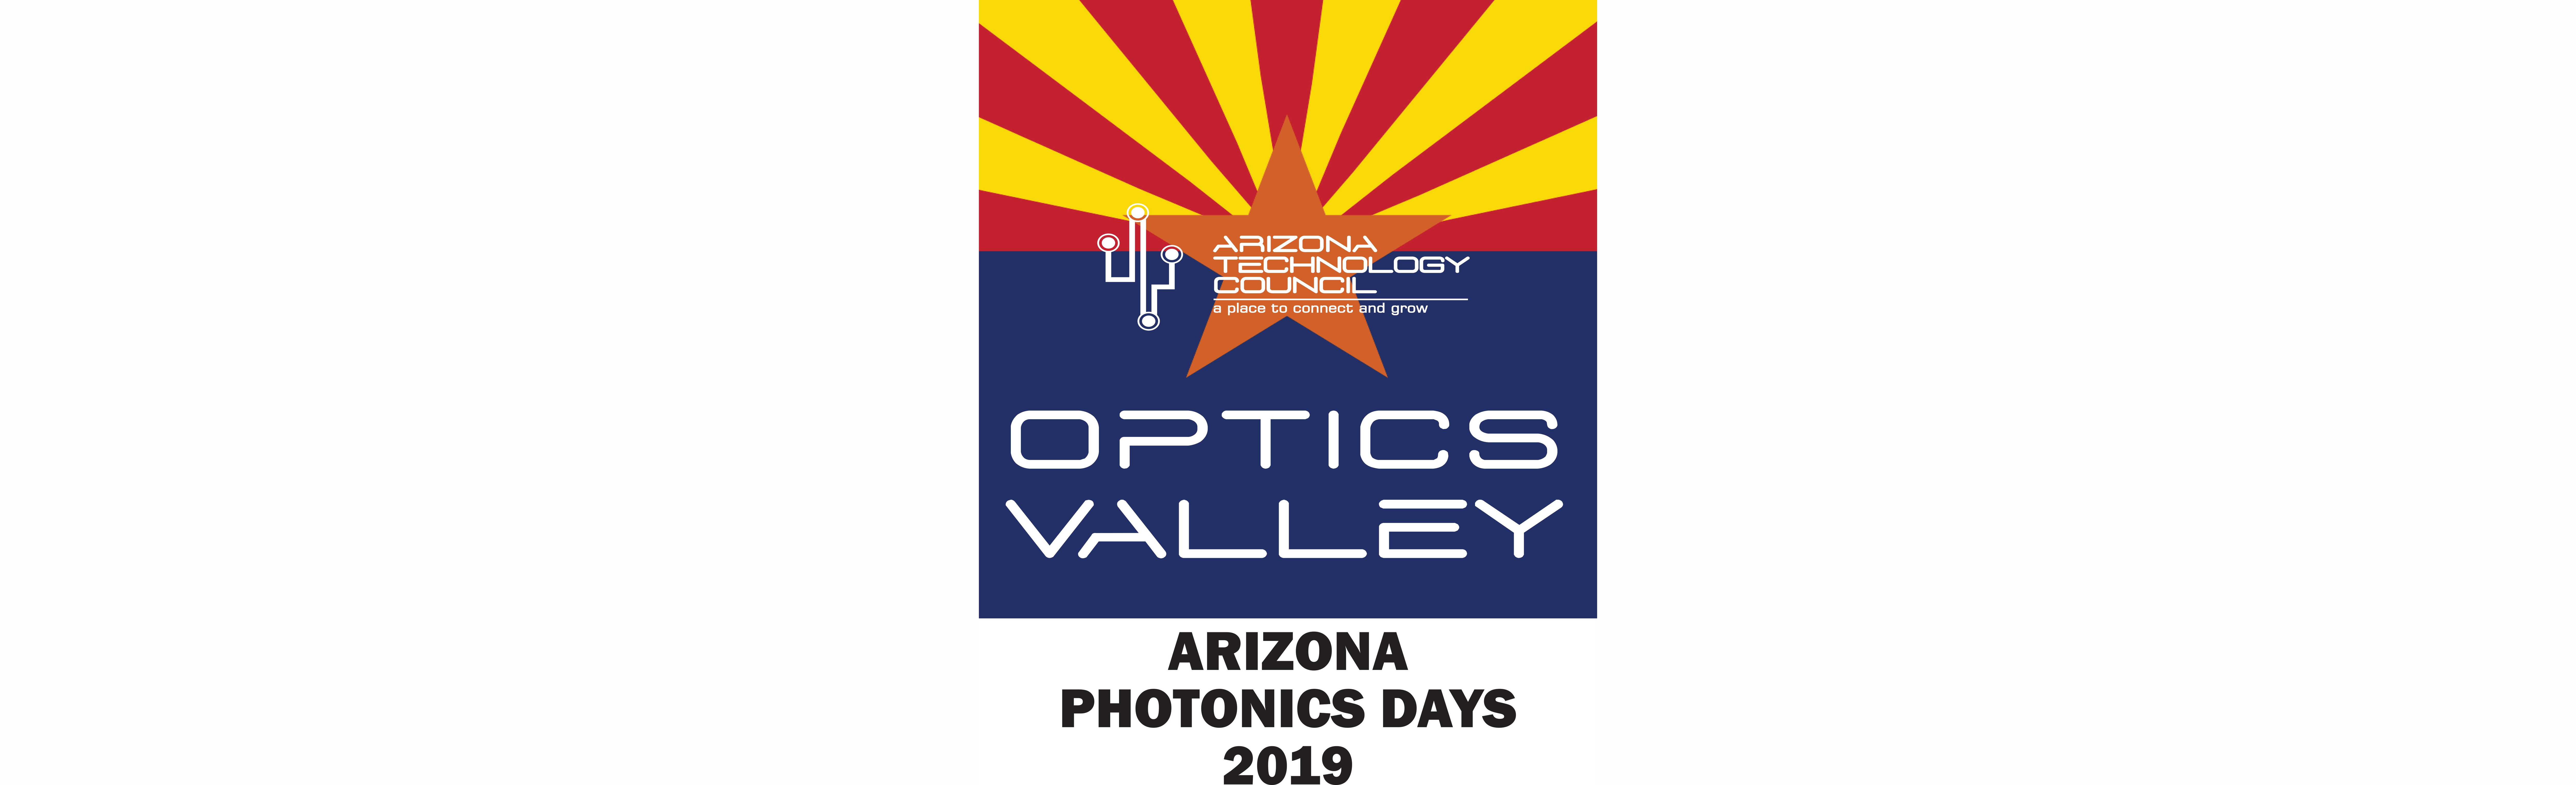 Arizona Technology Council’s logo for Arizona Photonics Day 2019